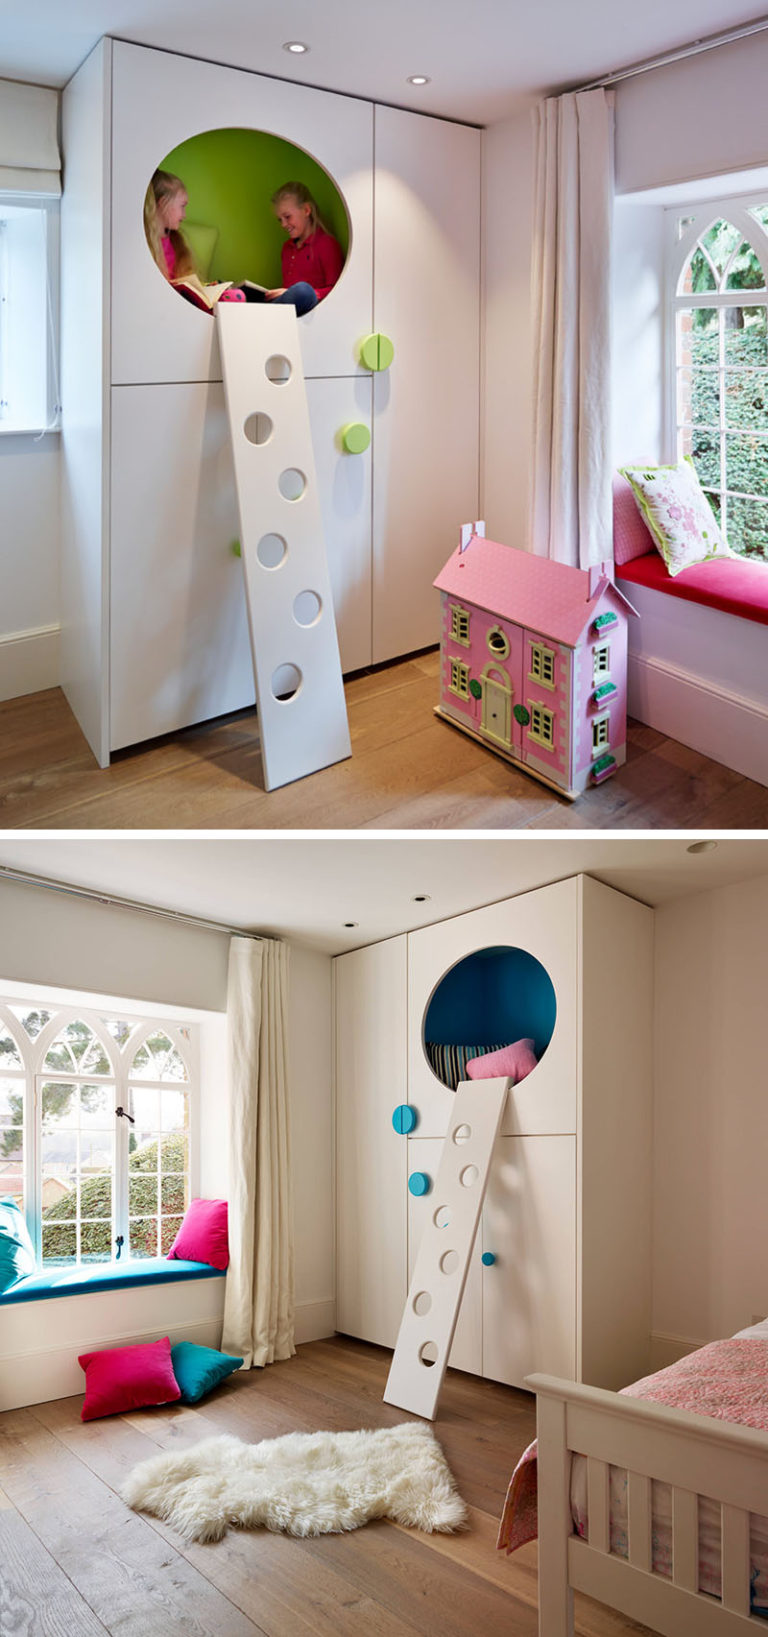 Современный детский интерьер: шкаф с матами вместо полок